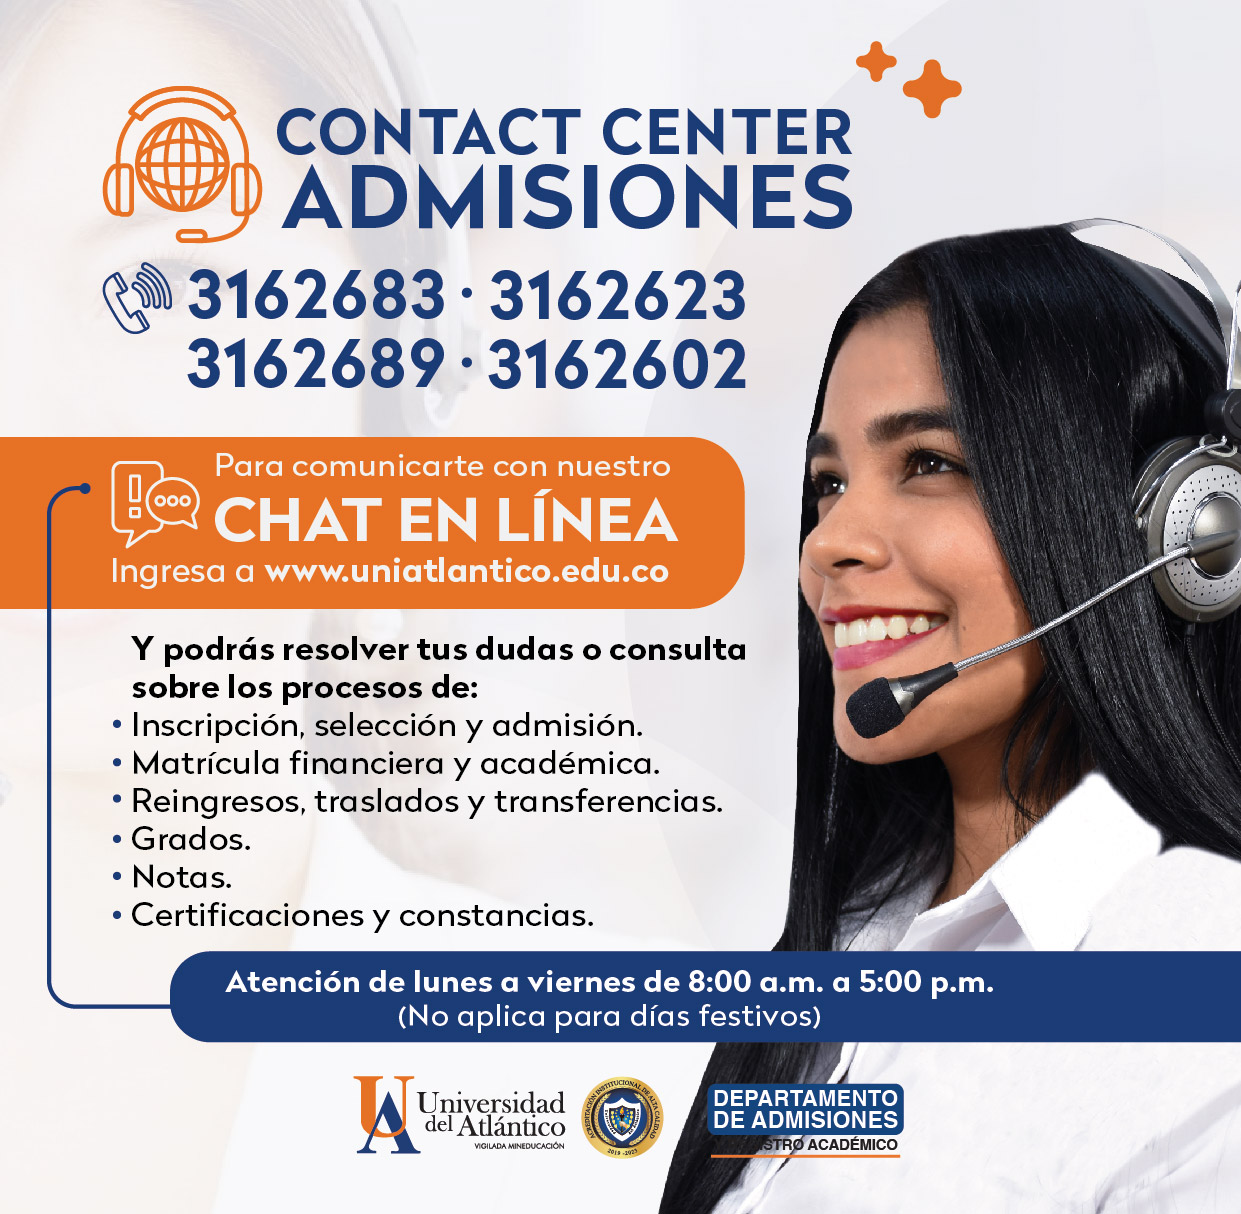 Contact Center Admisiones